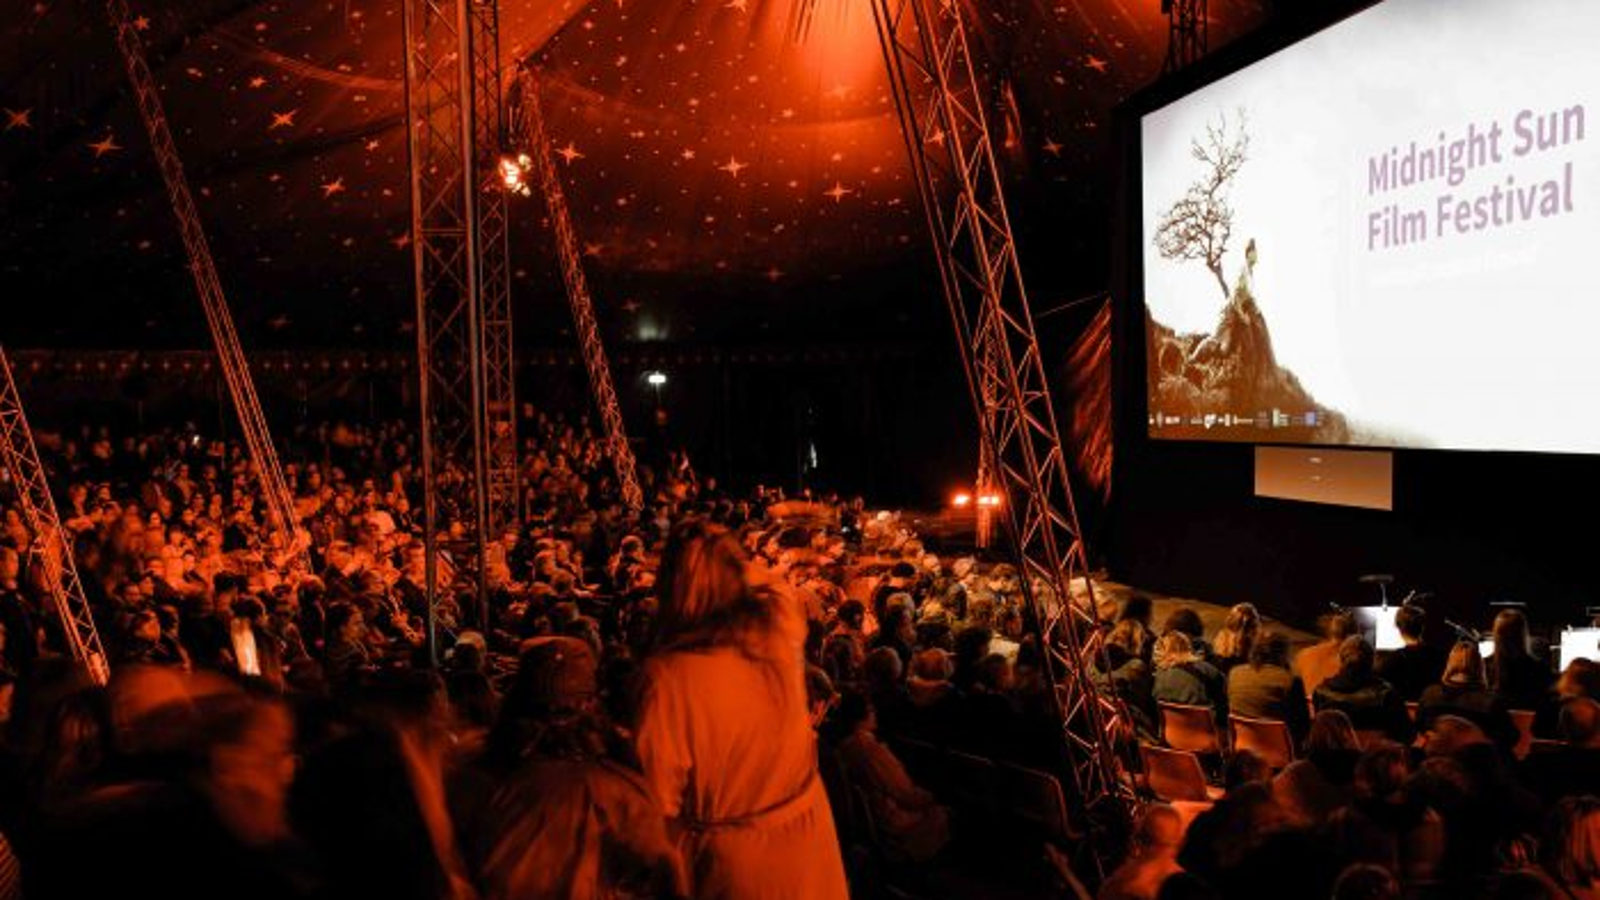 Kuva on Sodankylän elokuvajuhlilta ja pimennetyssä esitysteltassa on punaista valoa ja paljon yleisöä selin.  Meneillään on Moulin Rouge -karaoke.  Valkokankaalla lukee Midnight Sun Filmfestival.